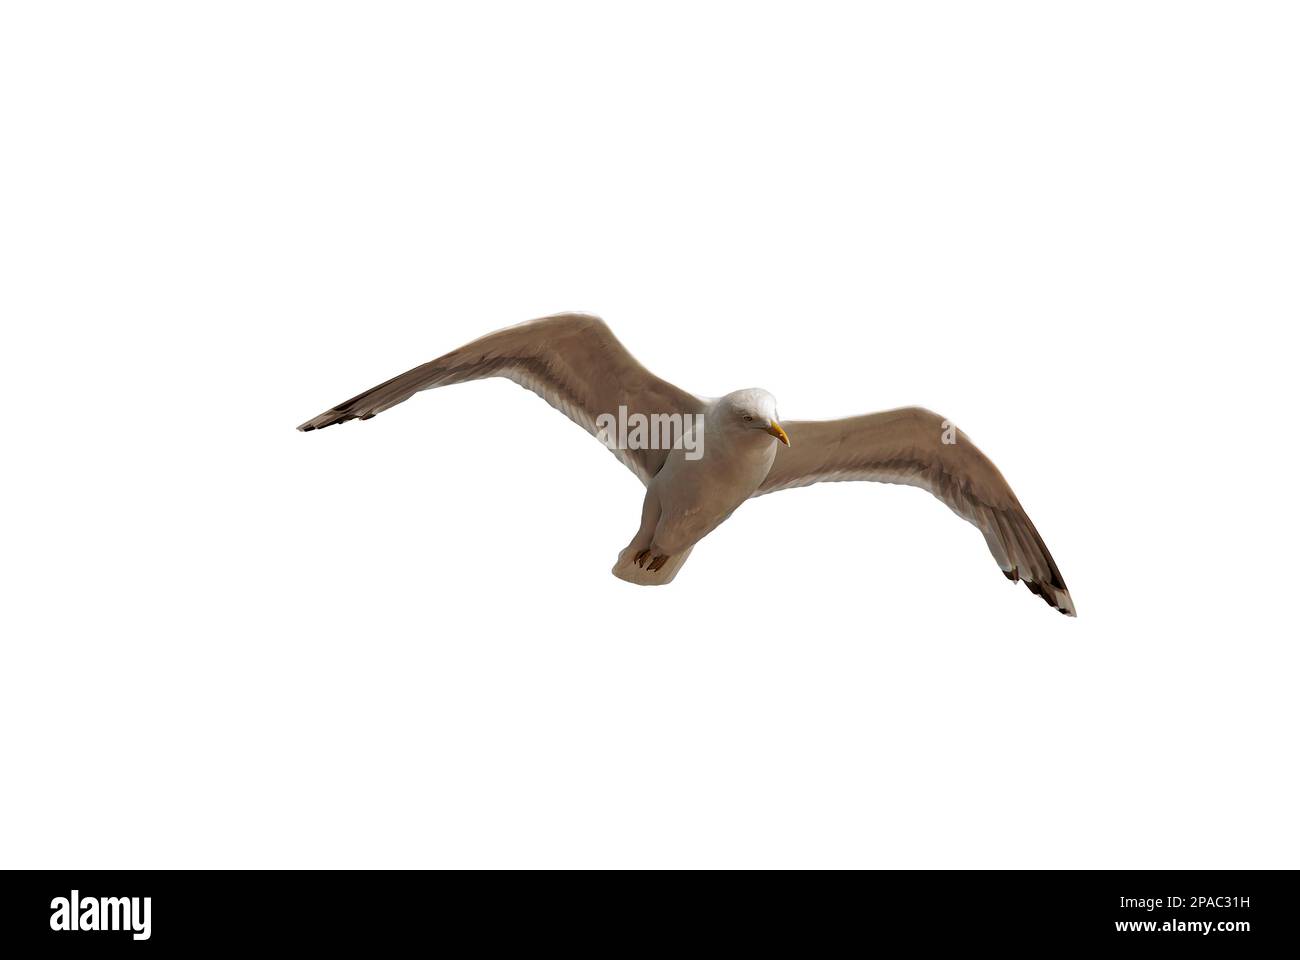 gabbiano di aringa guarda fuori nell'aria - gabbiano in volo isolato su sfondo bianco Foto Stock